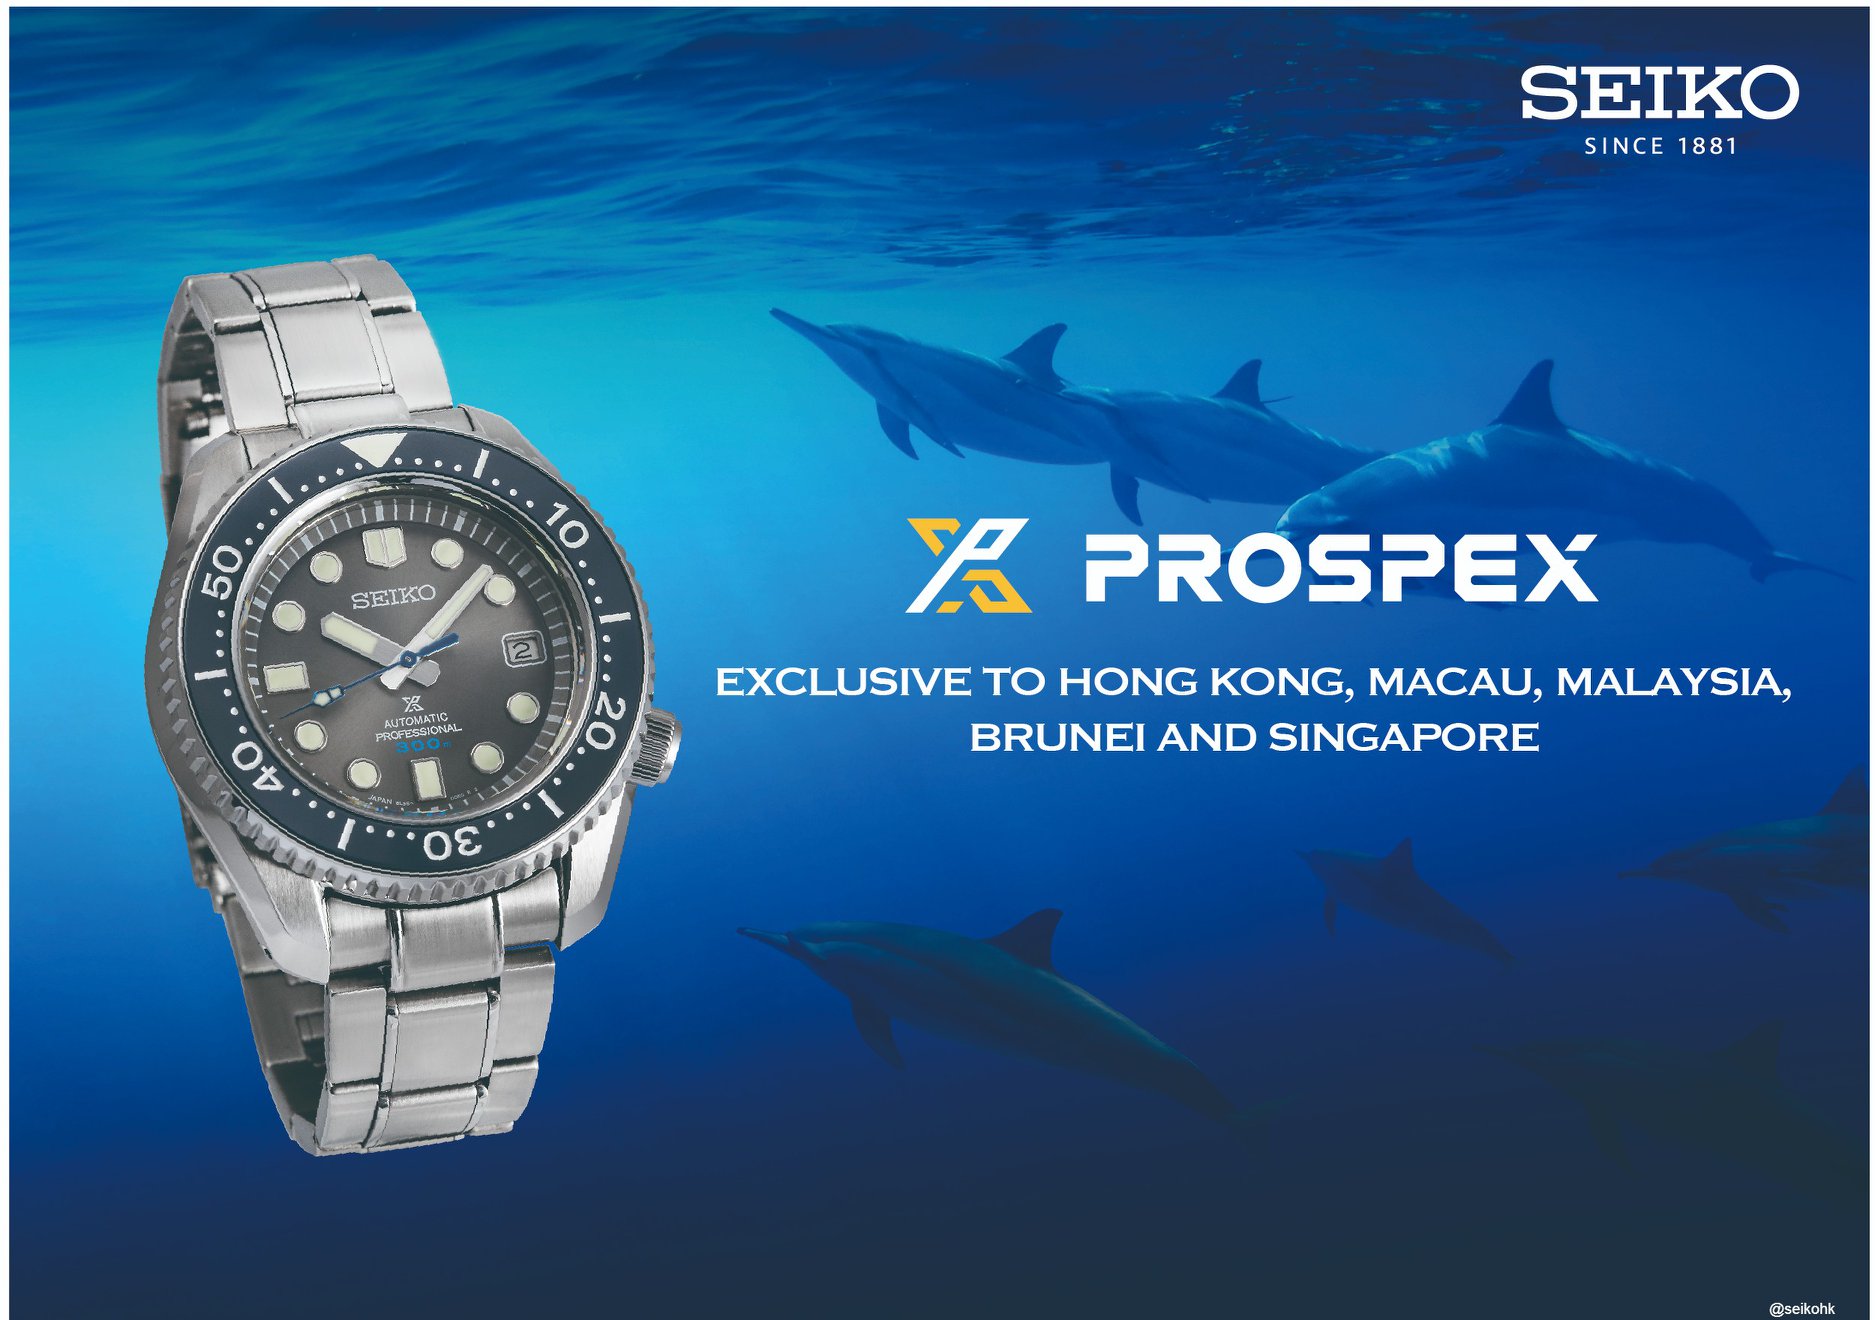 【SEIKO PROSPEX SLA045J1「藍海豚」潛水錶】 SEIKO PROSPEX SLA045J1潛水錶，腕錶錶徑44.3mm，錶盤上有夜光功能的大刻度與粗闊指針，日期窗口於3點鐘位置，錶冠於4點鐘位置，避免出現硌手的情況。不銹鋼錶殼，配上8L35自動上鍊機芯，單向陶瓷錶圈，錶底刻有海浪圖案及限量編號。 腕錶搭配不銹鋼錶帶，其延長裝置只需按掣便可增長錶扣，方便穿着潛水衣時使用，隨盒更附送寶藍色矽膠錶帶，可因應需要更換。... 選購PROSPEX SLA045J1 -「藍海豚」